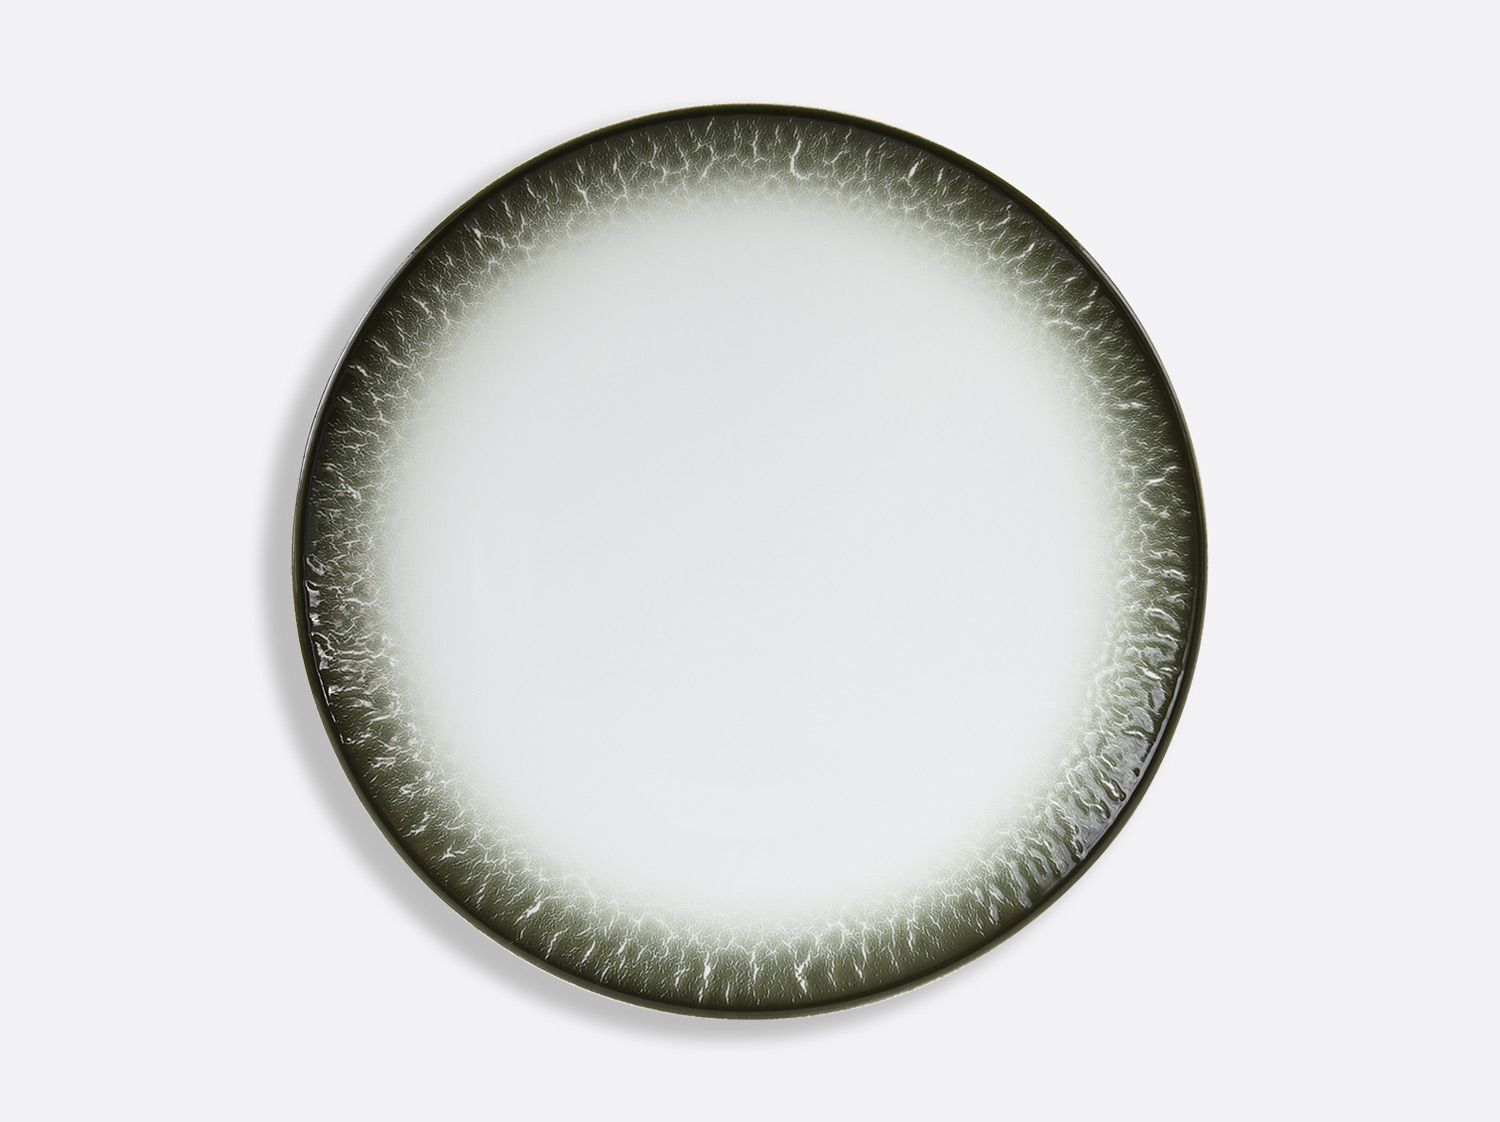 Assiette ultra plate 29,5 cm en porcelaine de la collection TERRA LICHEN Bernardaud